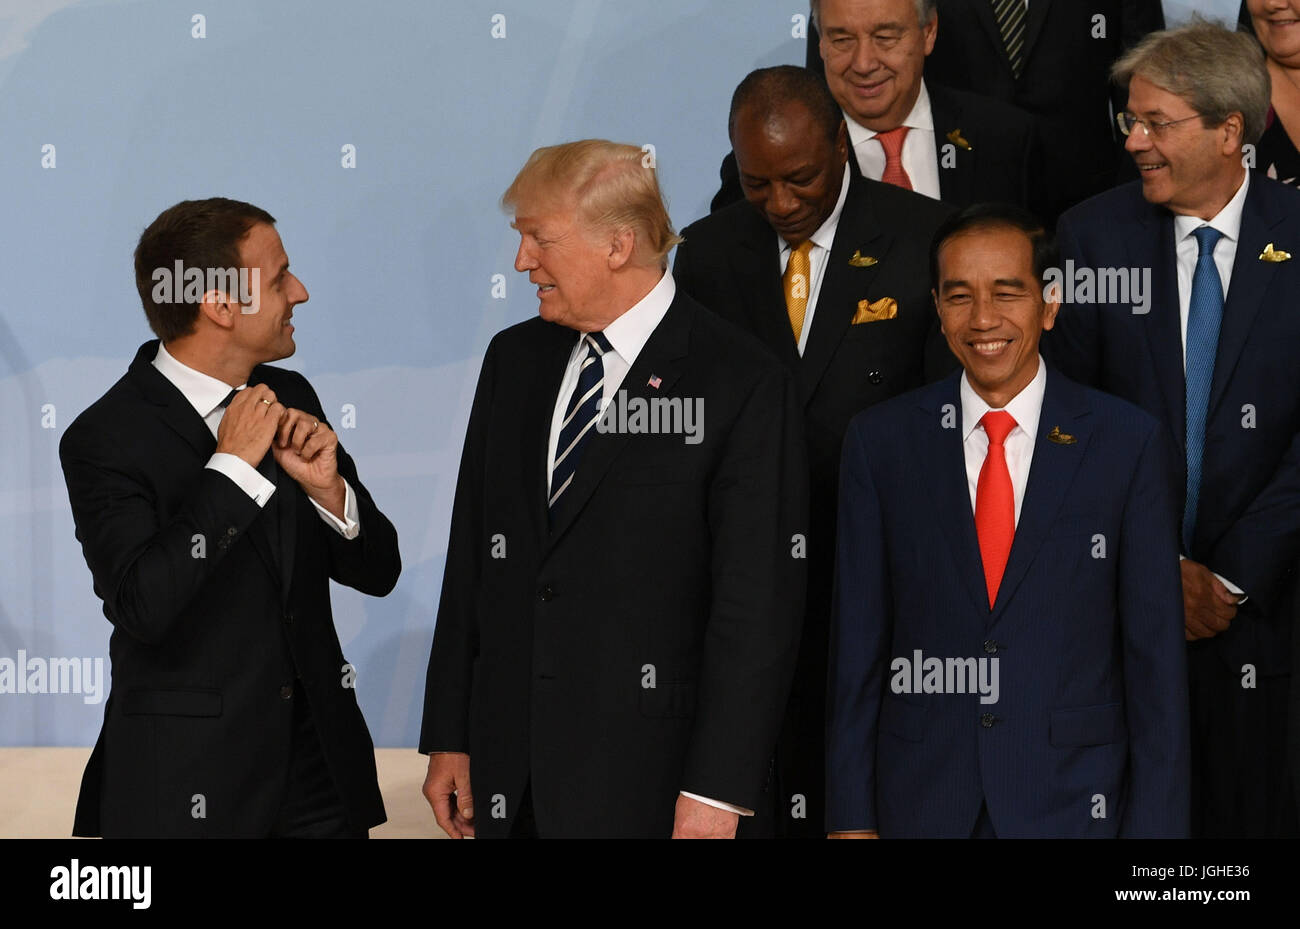 (De gauche à droite) Le président français, Emmanuel Macron, le président américain Donald Trump et le président indonésien Joko Widodo interagir en tant que dirigeants du monde posent pour une photo de famille pendant le sommet du G20 à Hambourg. Banque D'Images